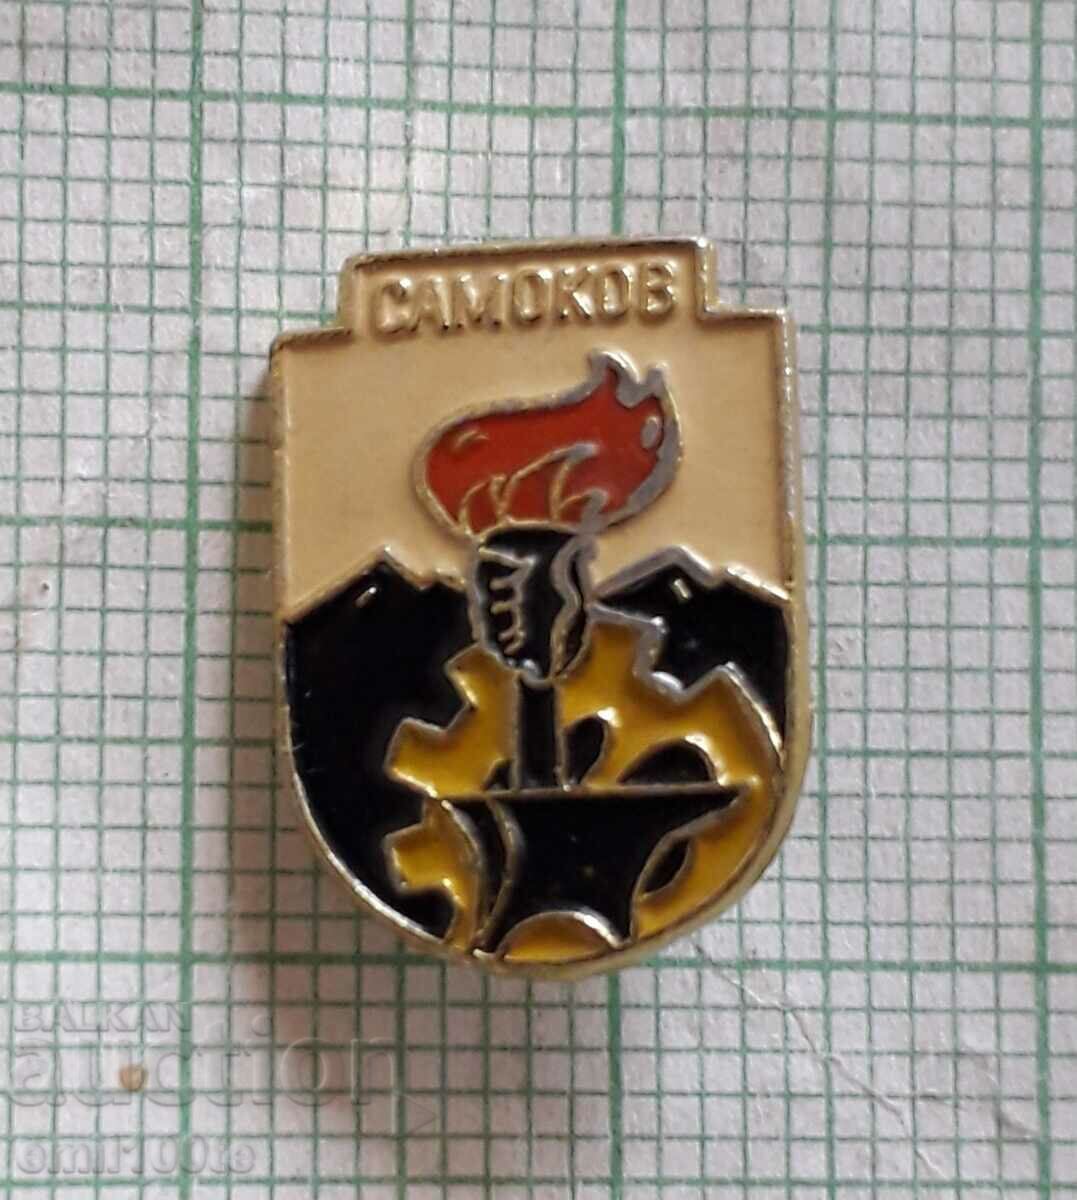 Badge - Samokov coat of arms